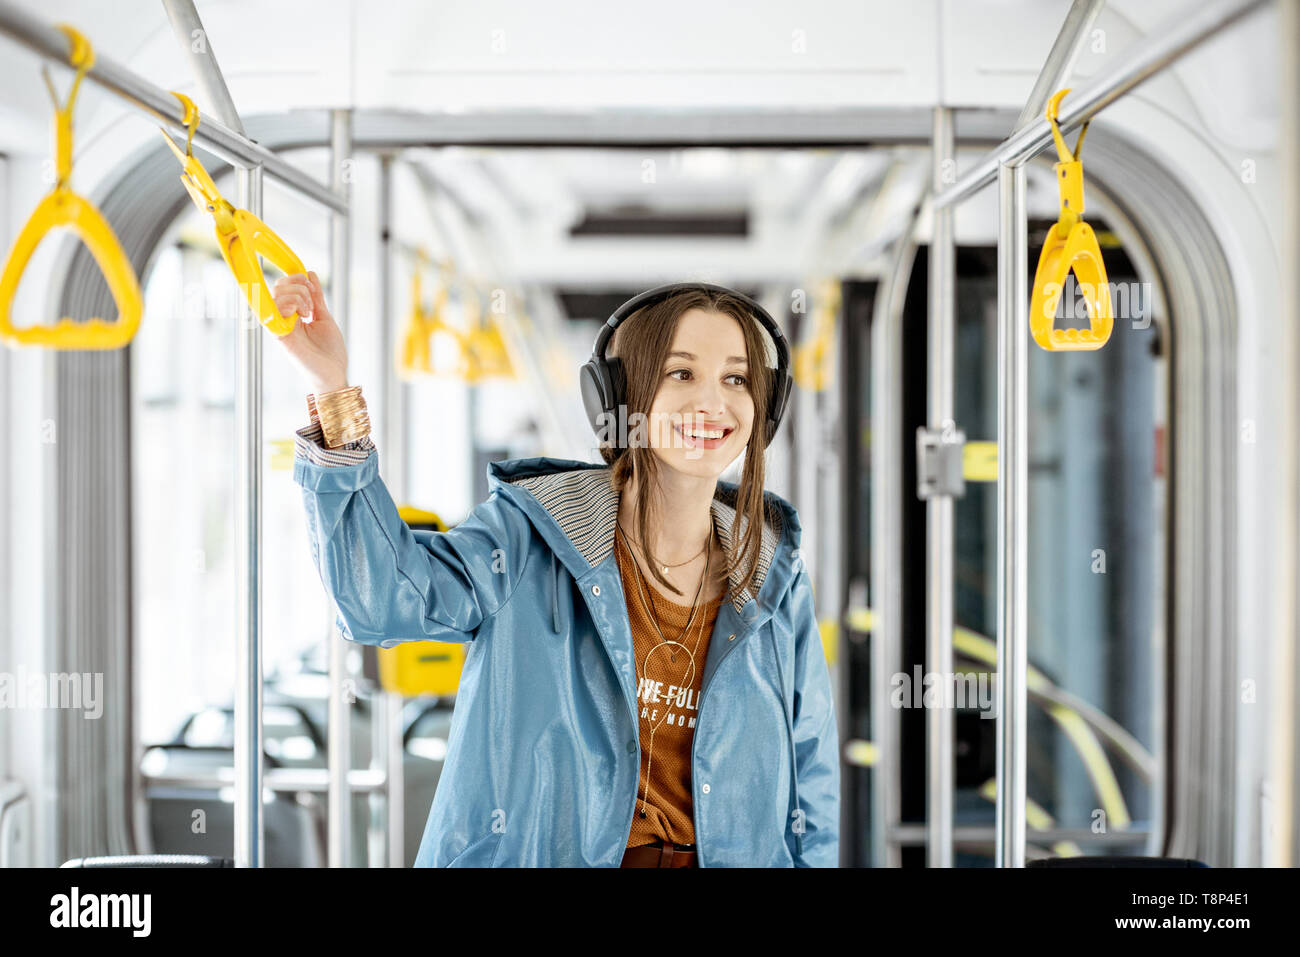 Junge Frau mit Griff während der Fahrt in modernen Straßenbahn. Glückliche Passagiere genießen Urlaub im öffentlichen Verkehr Stockfoto